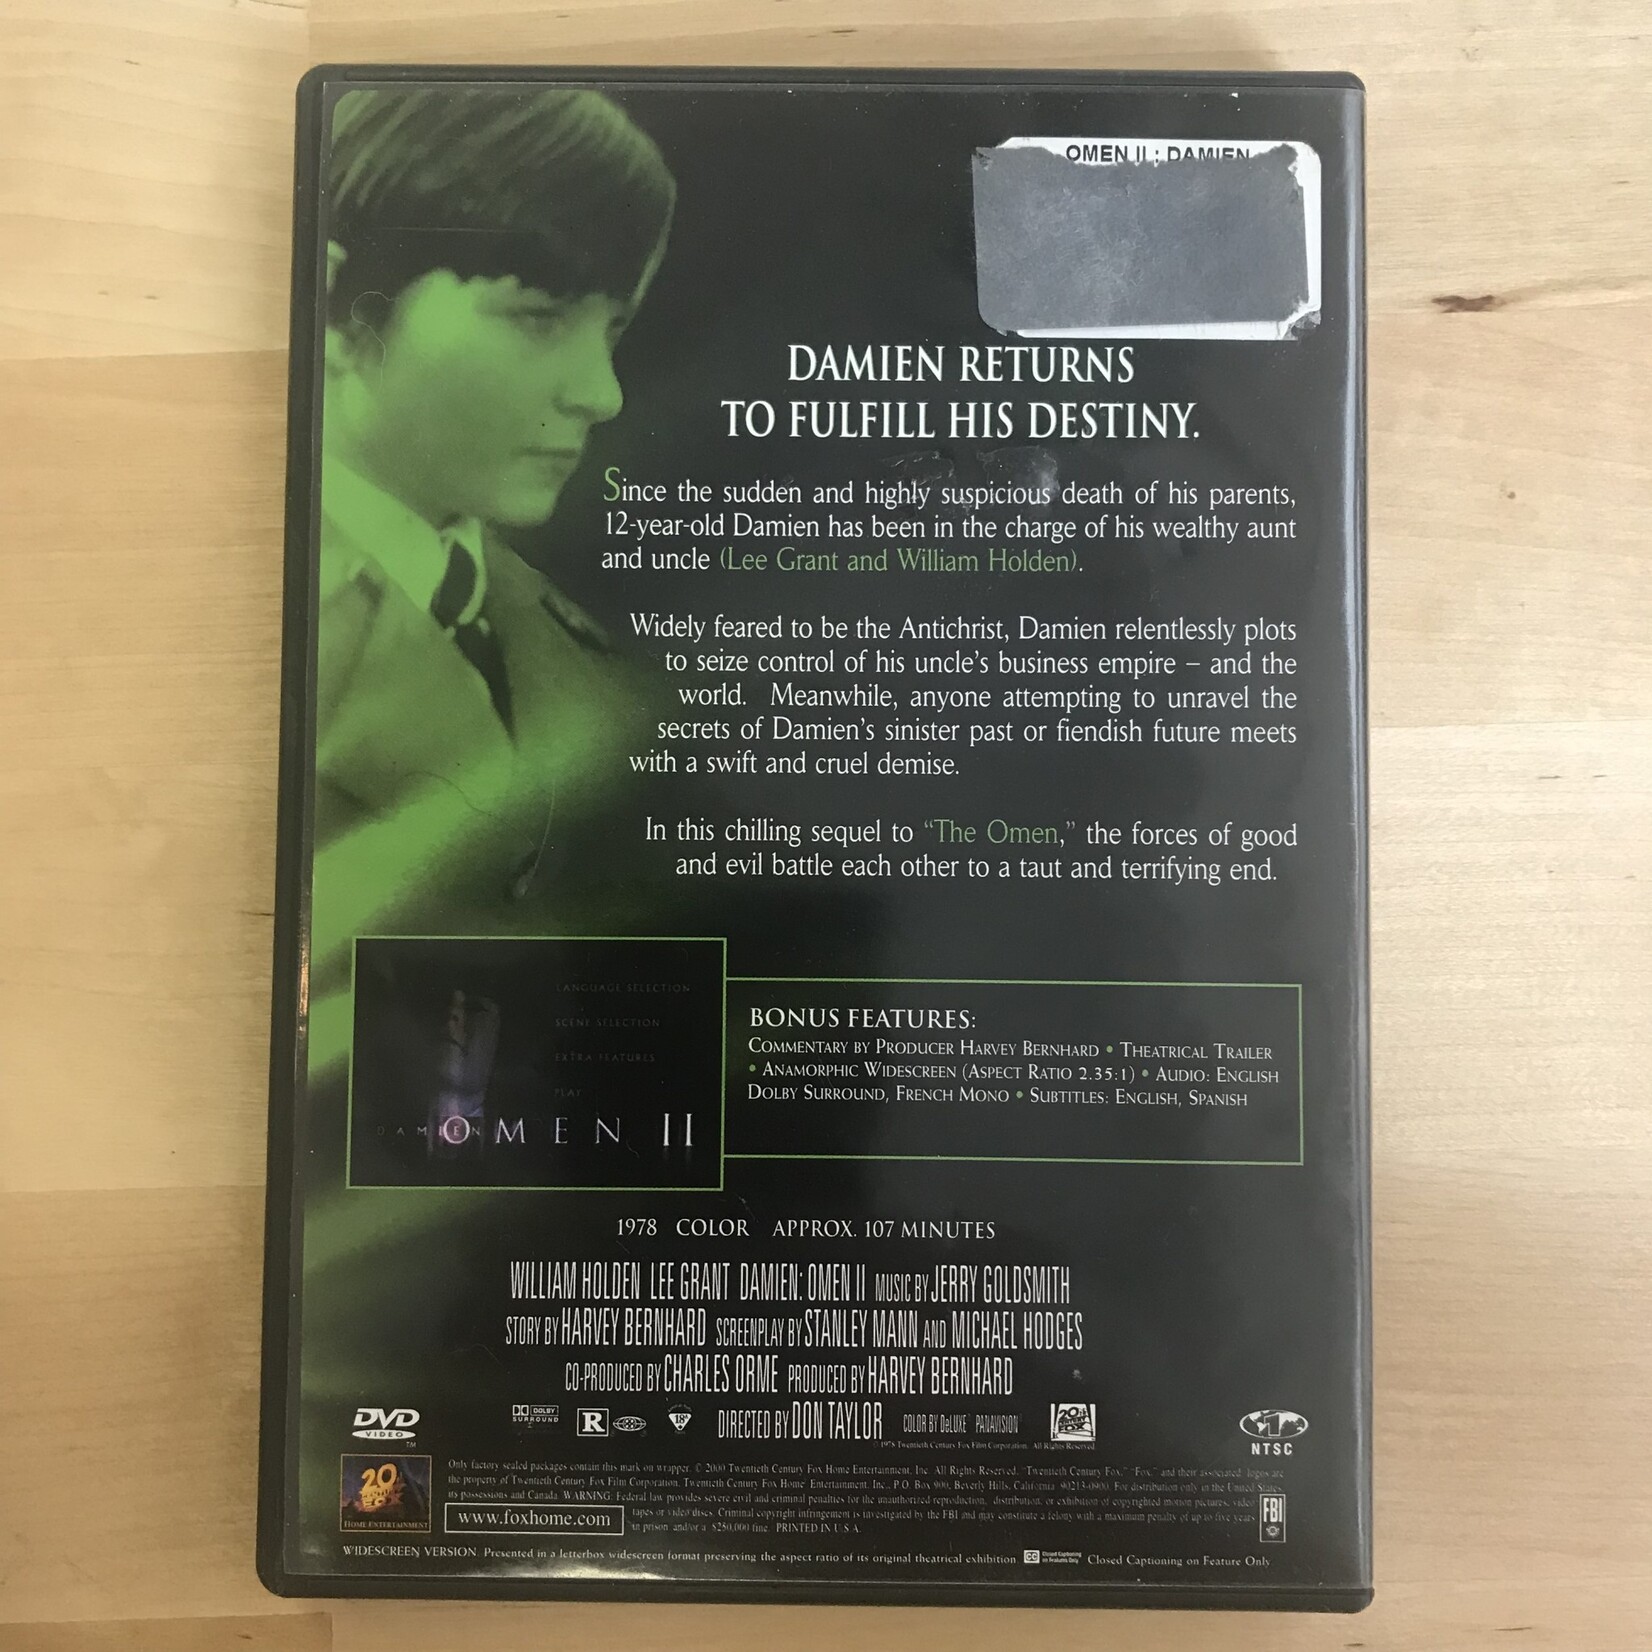 Omen II: Damien - DVD (USED)